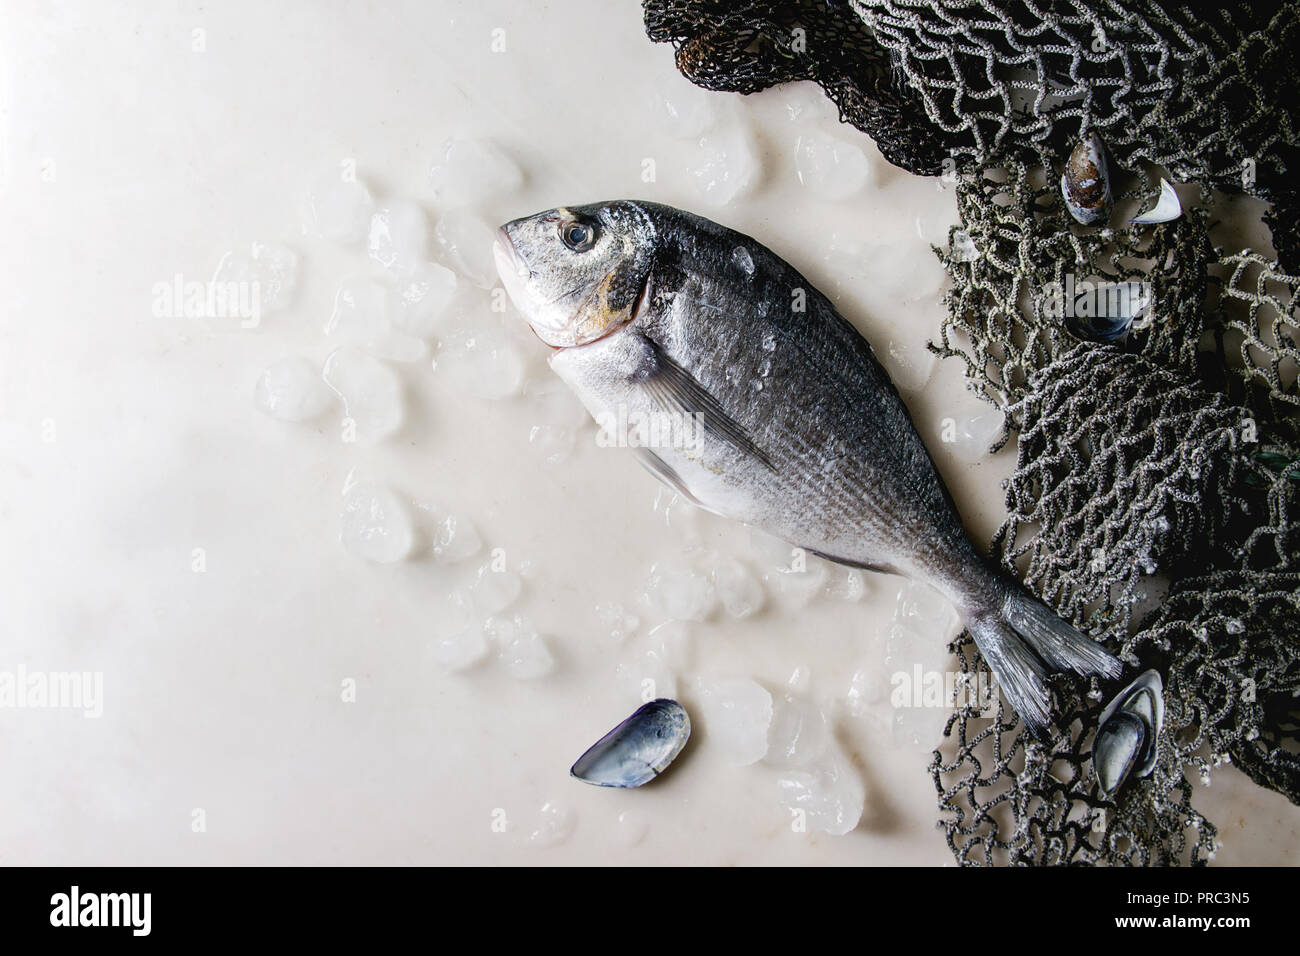 Raw sea bream fish Stock Photo